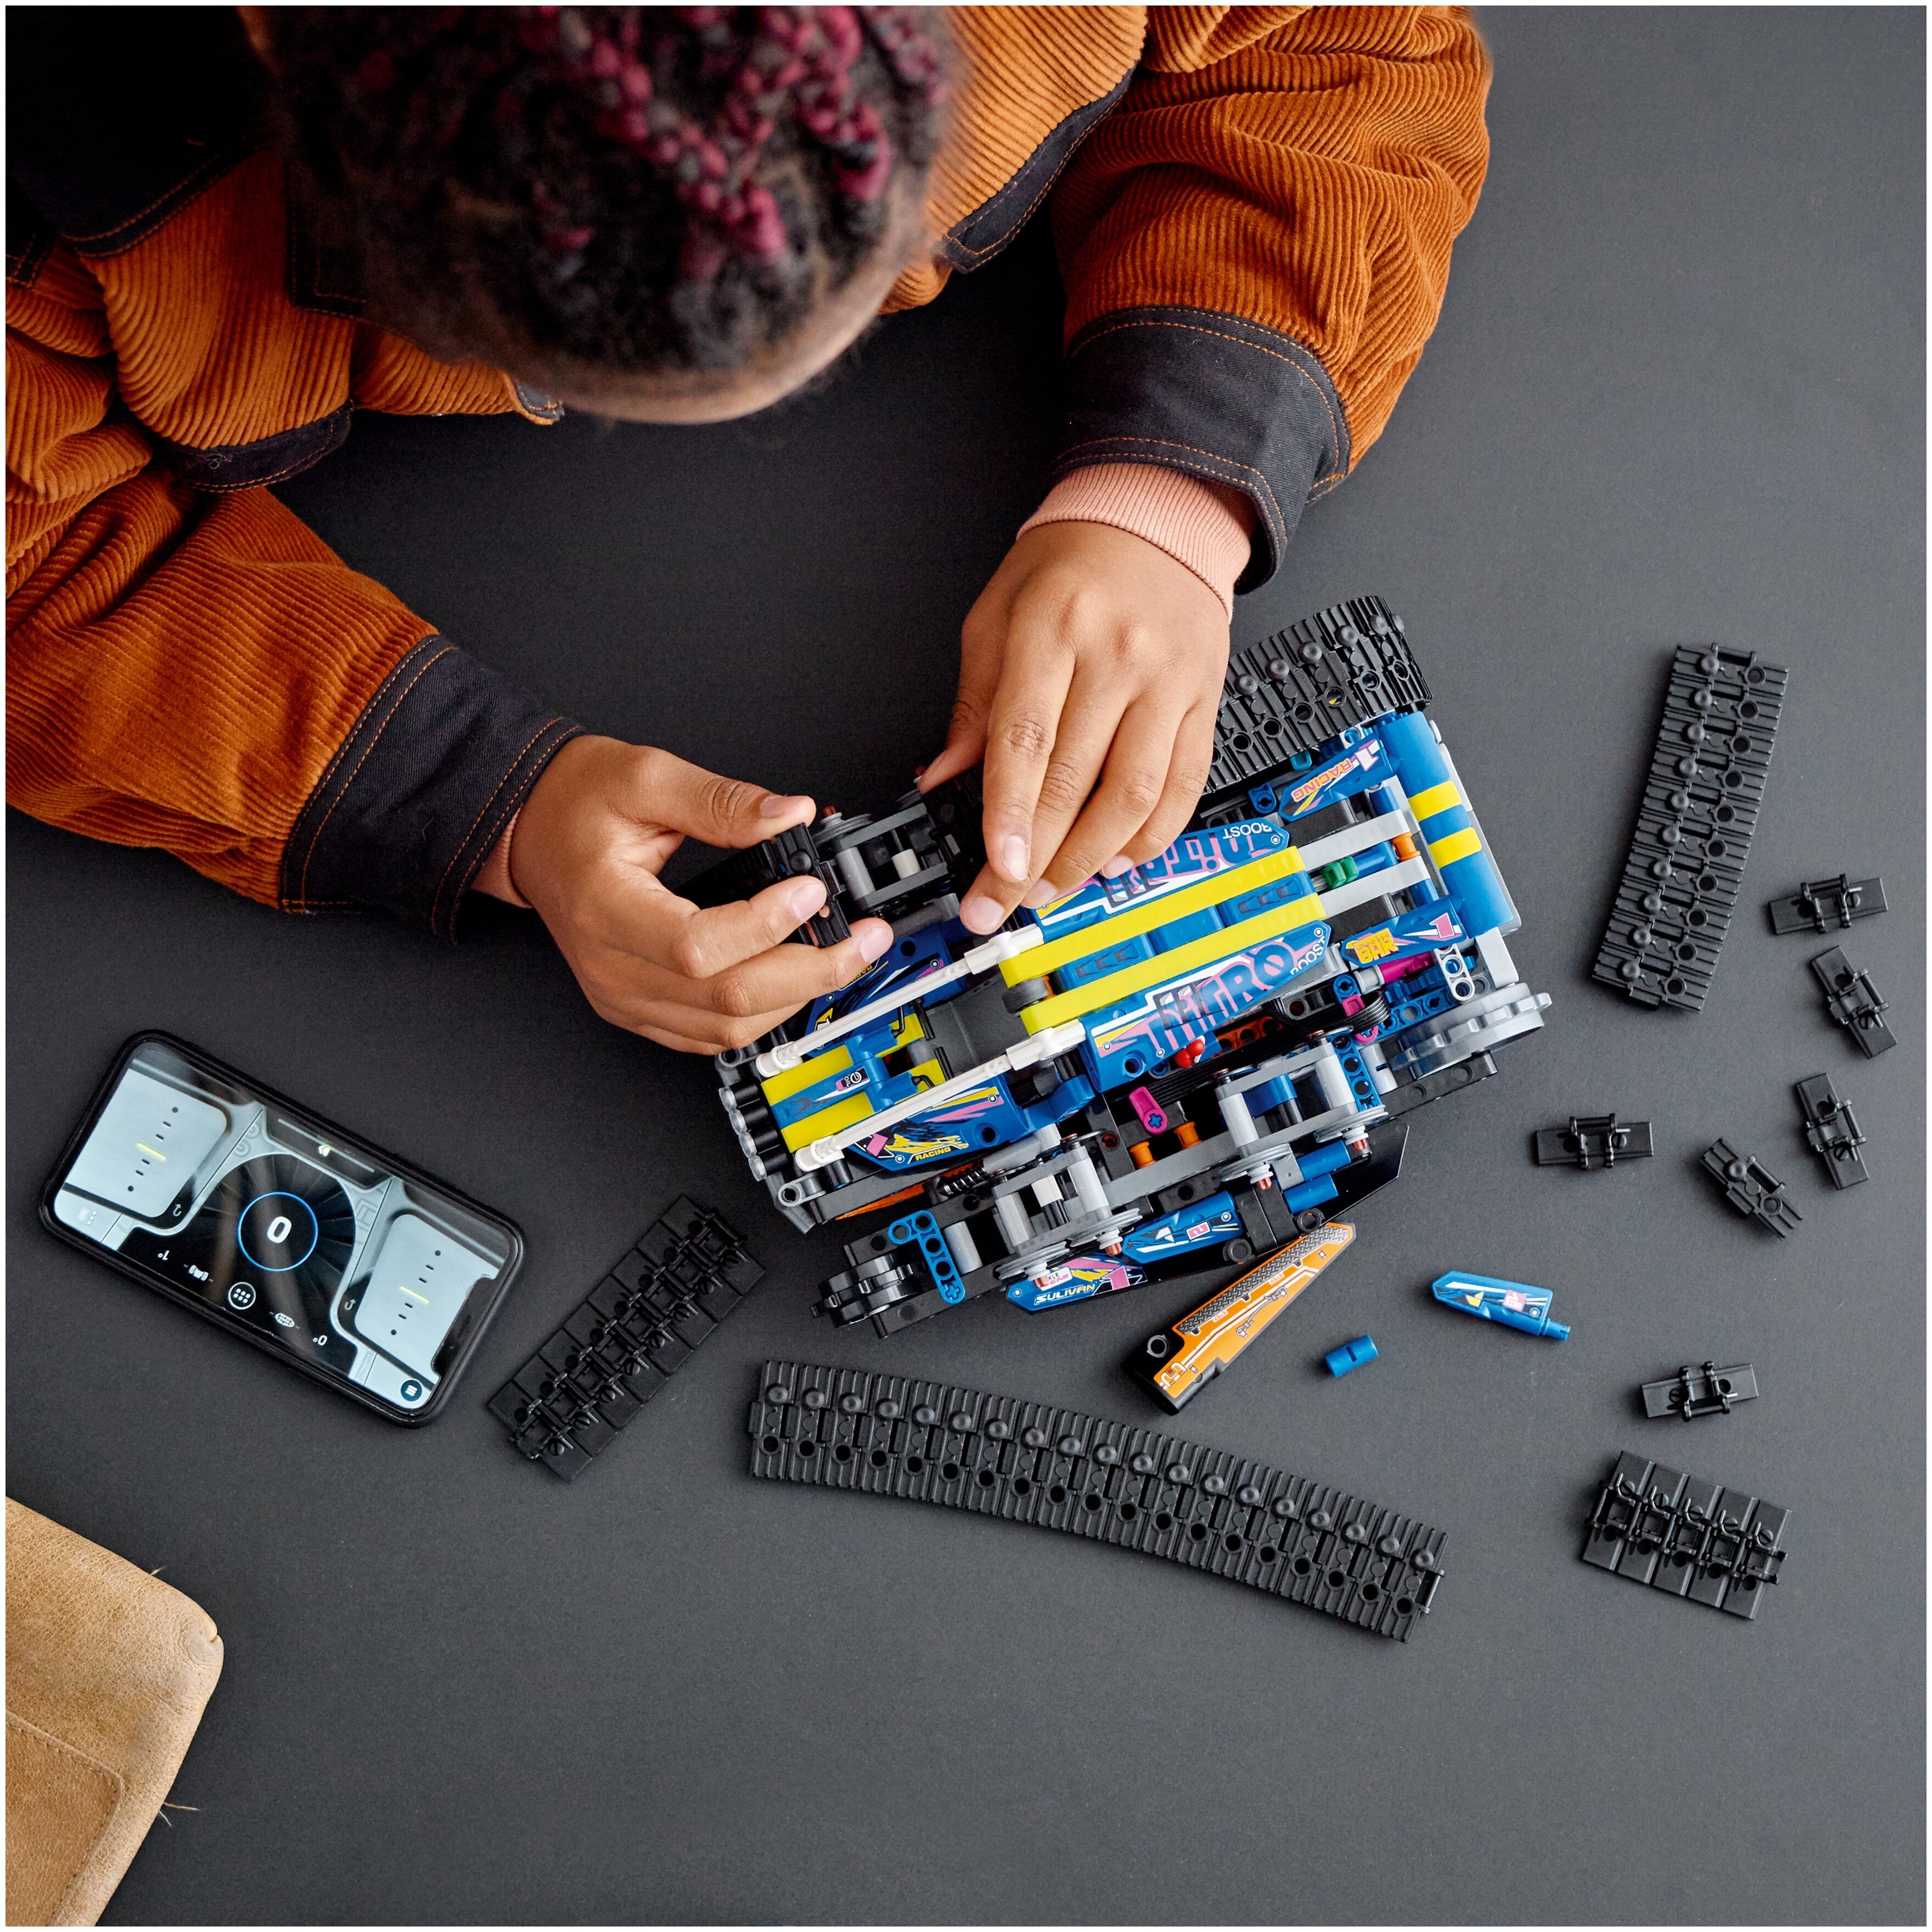 Конструктор LEGO Машина-трансформер на дистанционном управлении Technic 42140 Казахстан